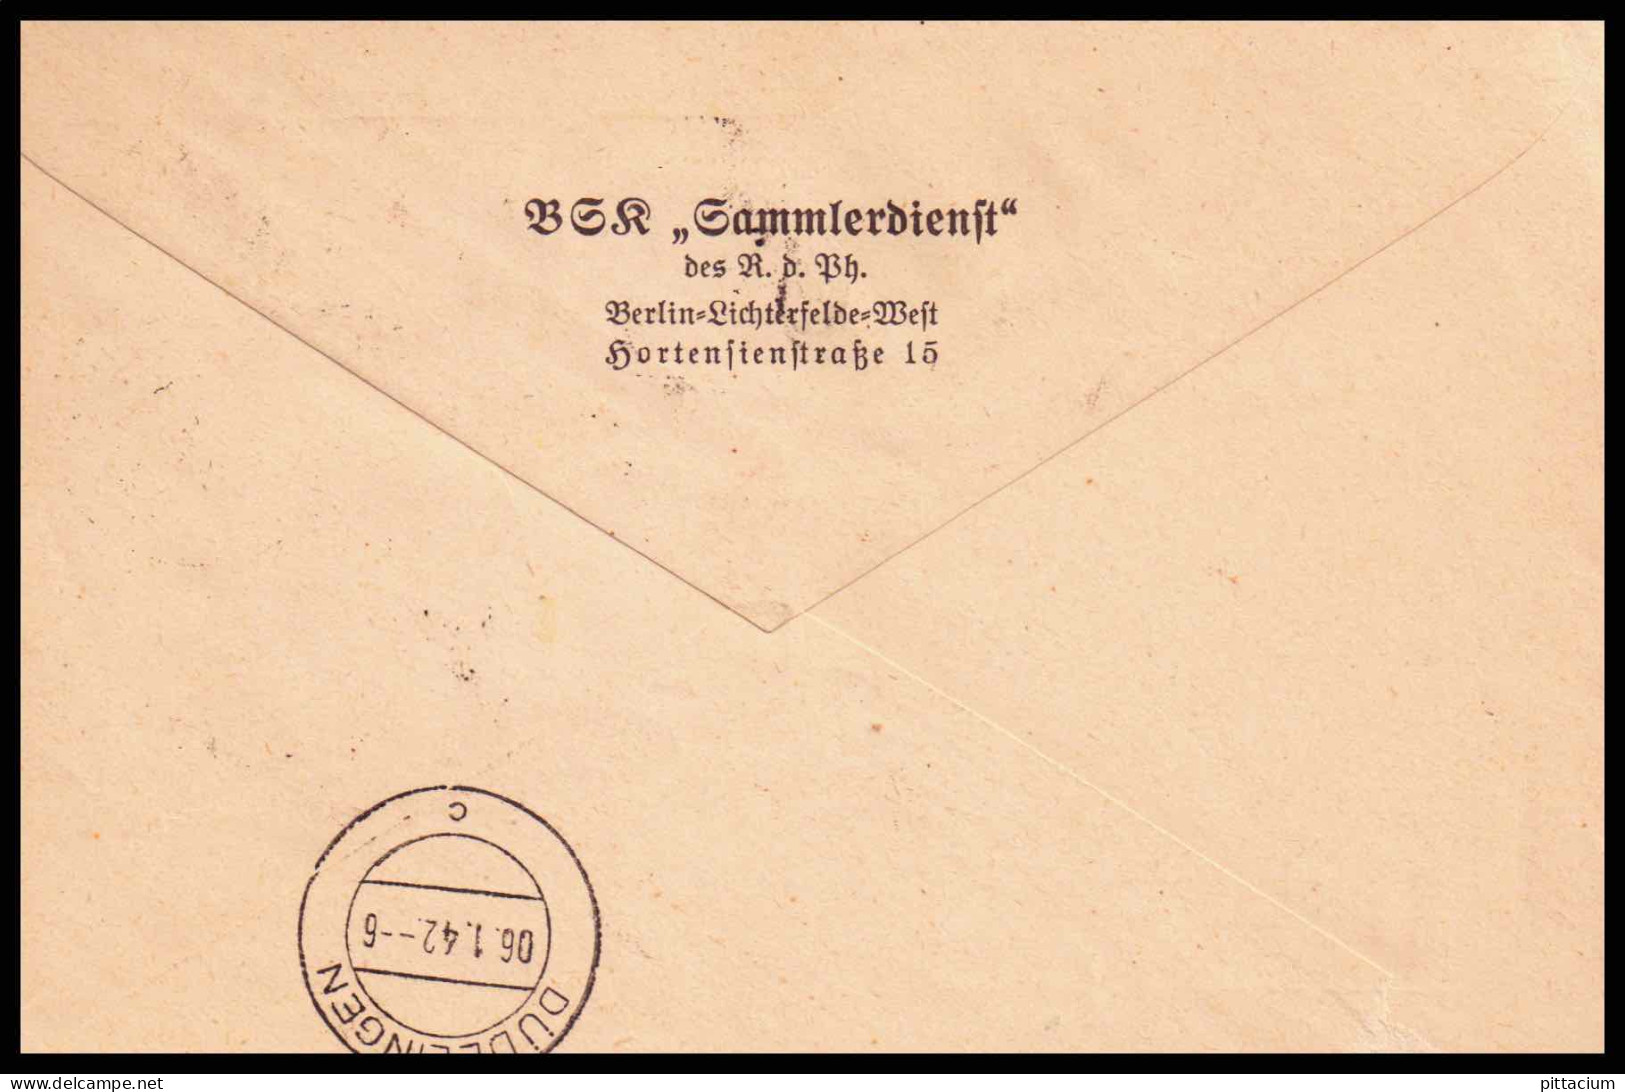 Luxemburg 1941: Brief / Einschreiben | Besatzung, R-Zettel | Luxemburg;Luxembourg, Düdelingen;Dudelange - 1940-1944 German Occupation